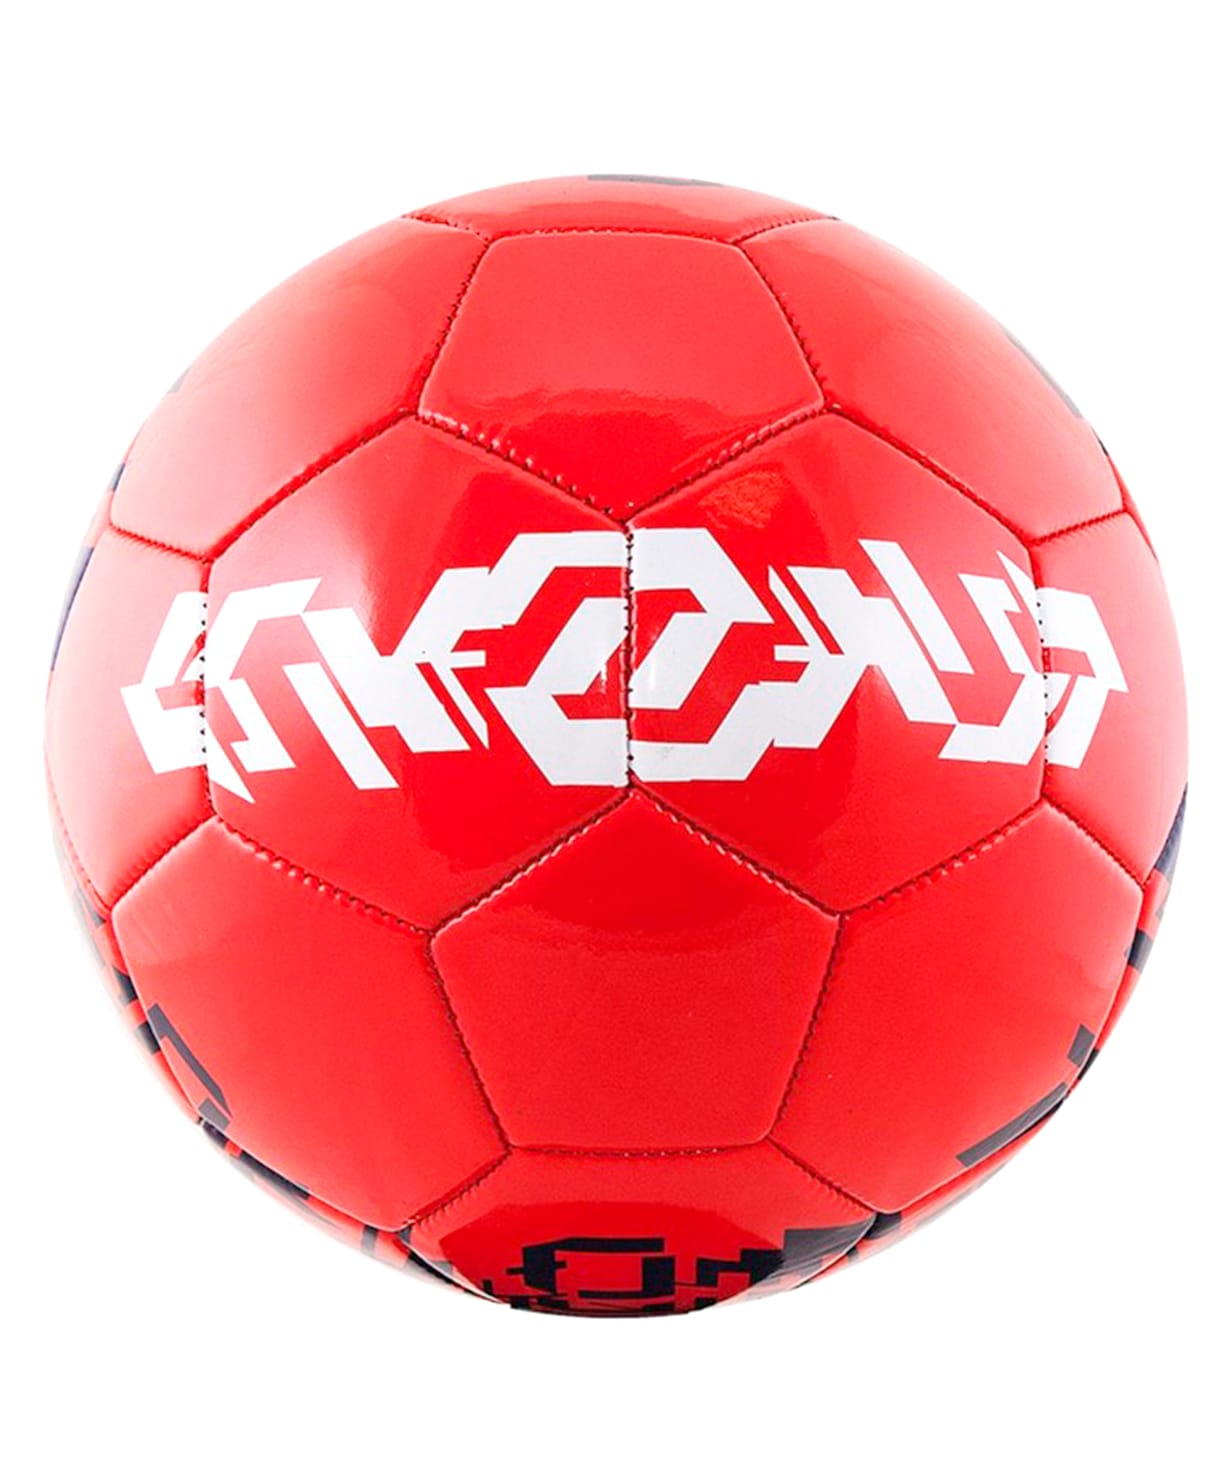 Футбольный мяч картинка для детей